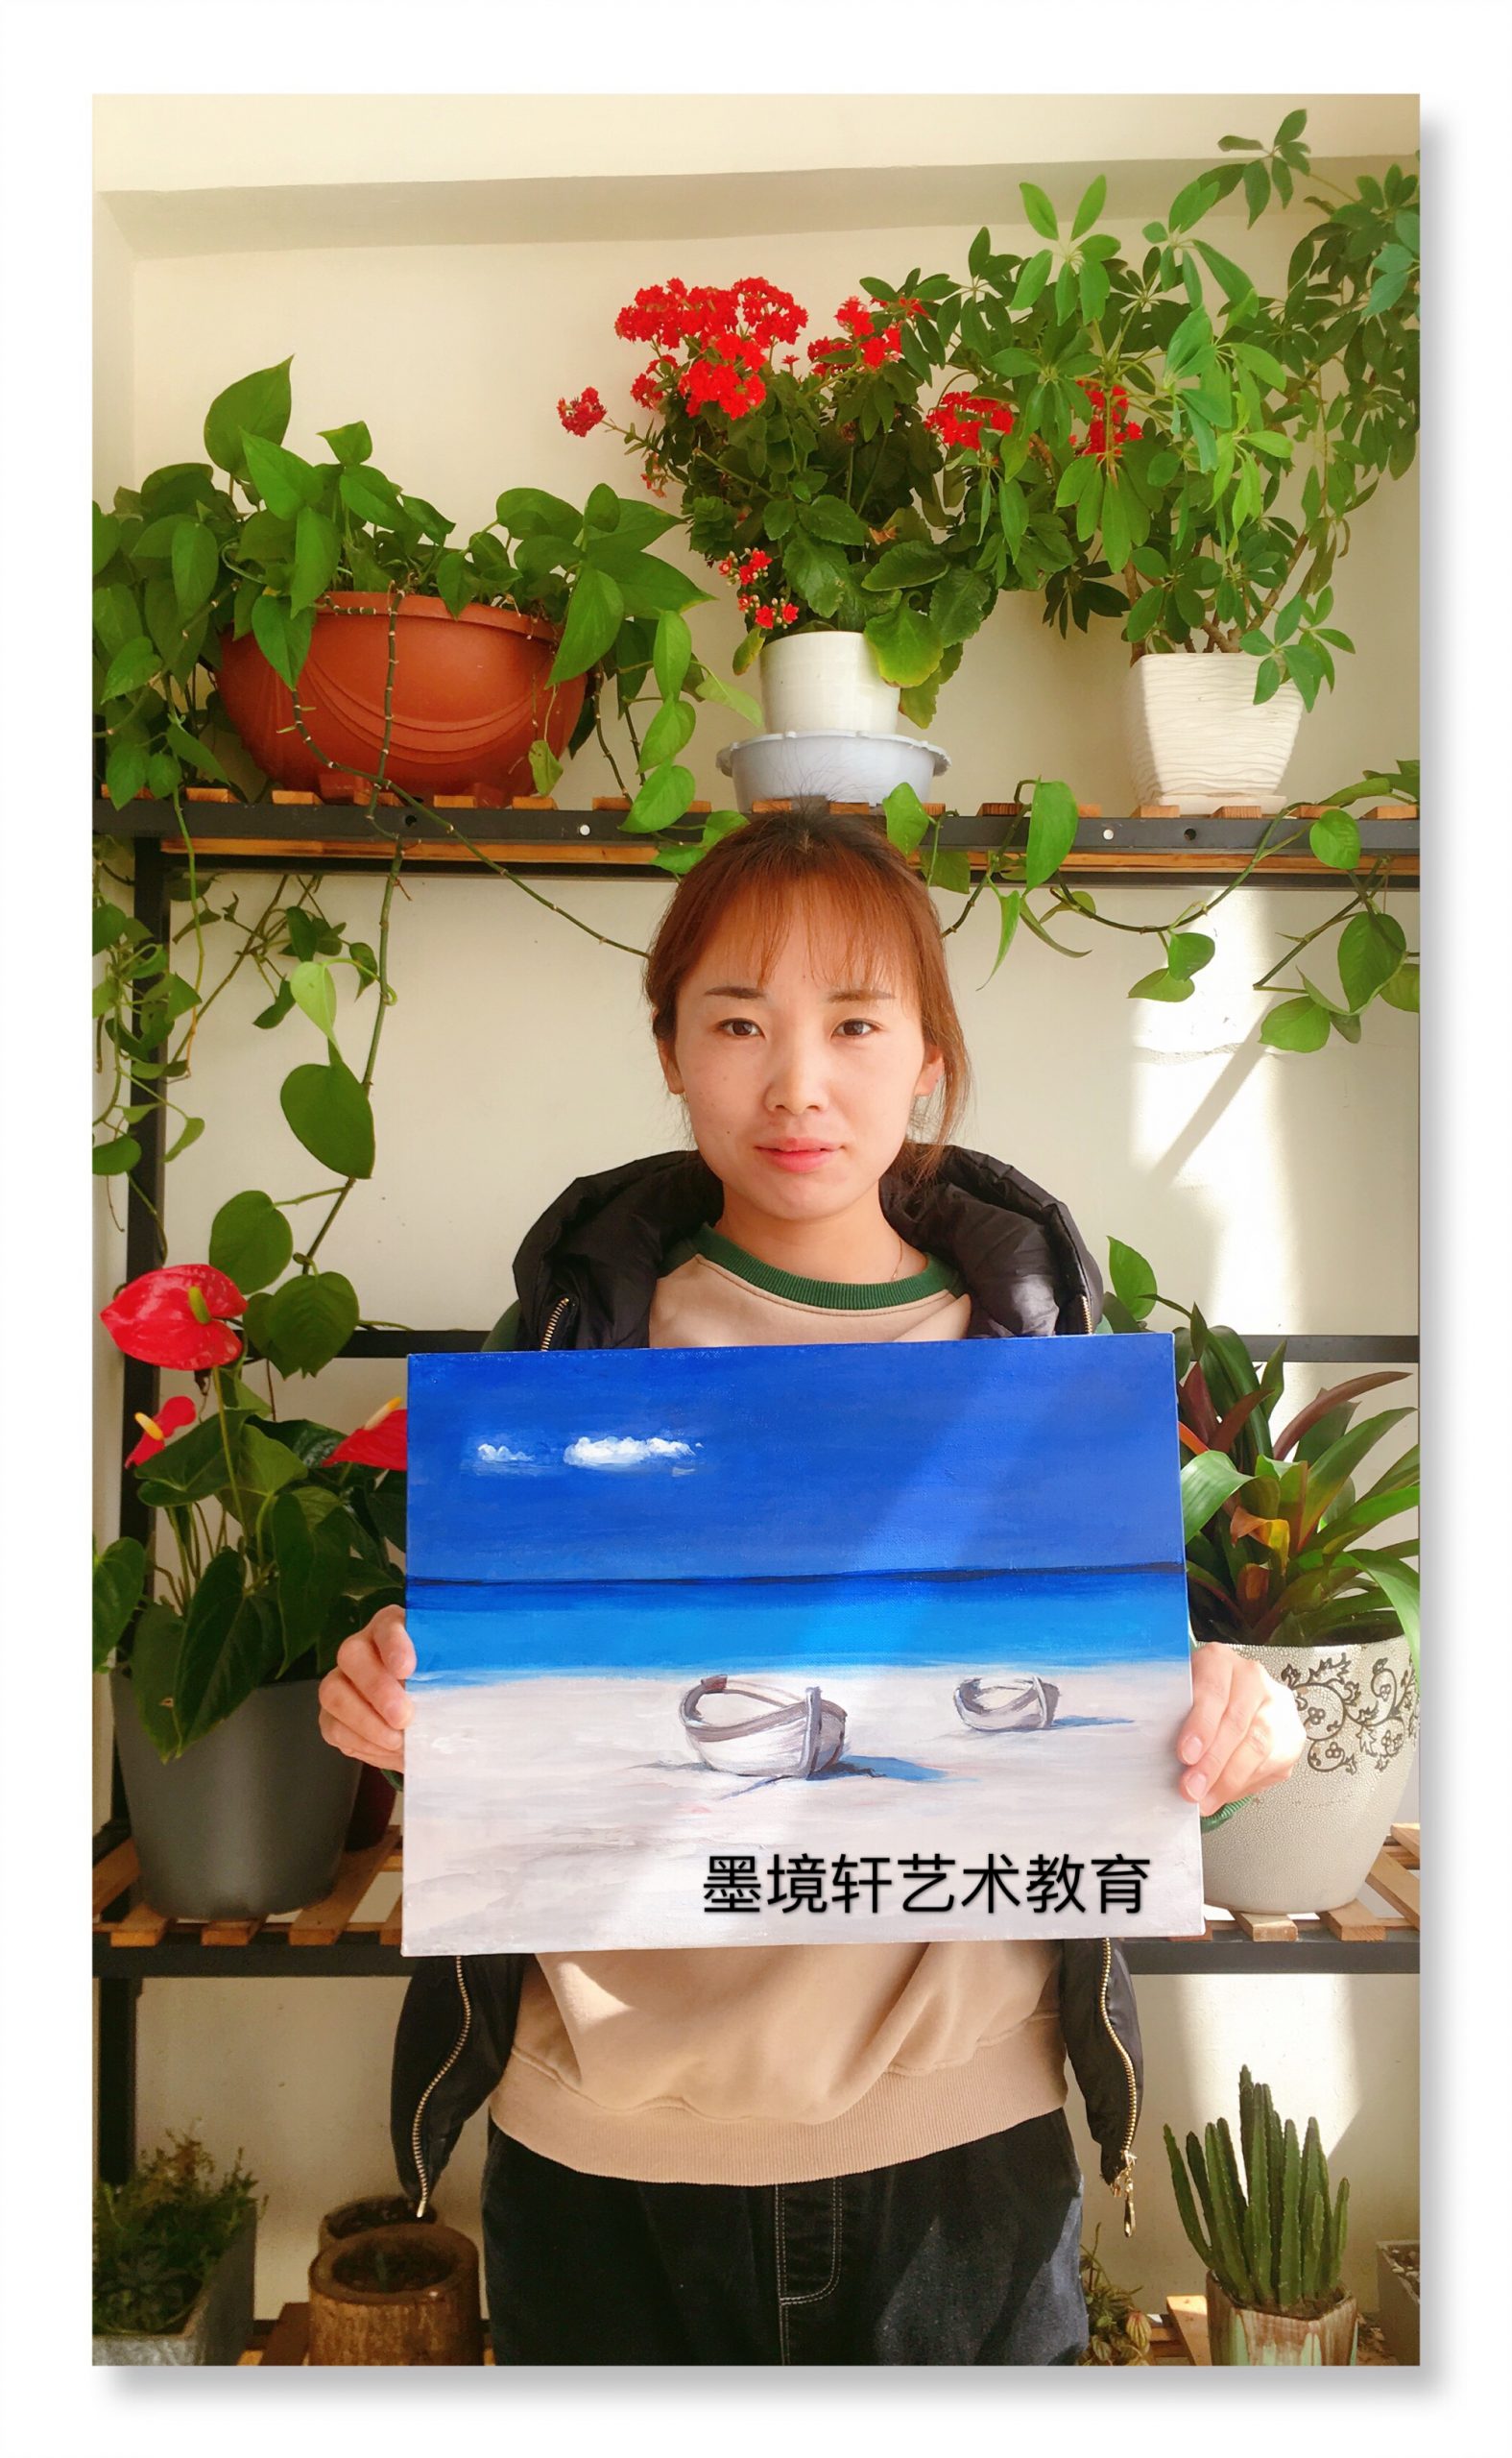 【2019年3月】墨境轩国际教育中心组织亲子DIY 油画课 活动 第7张